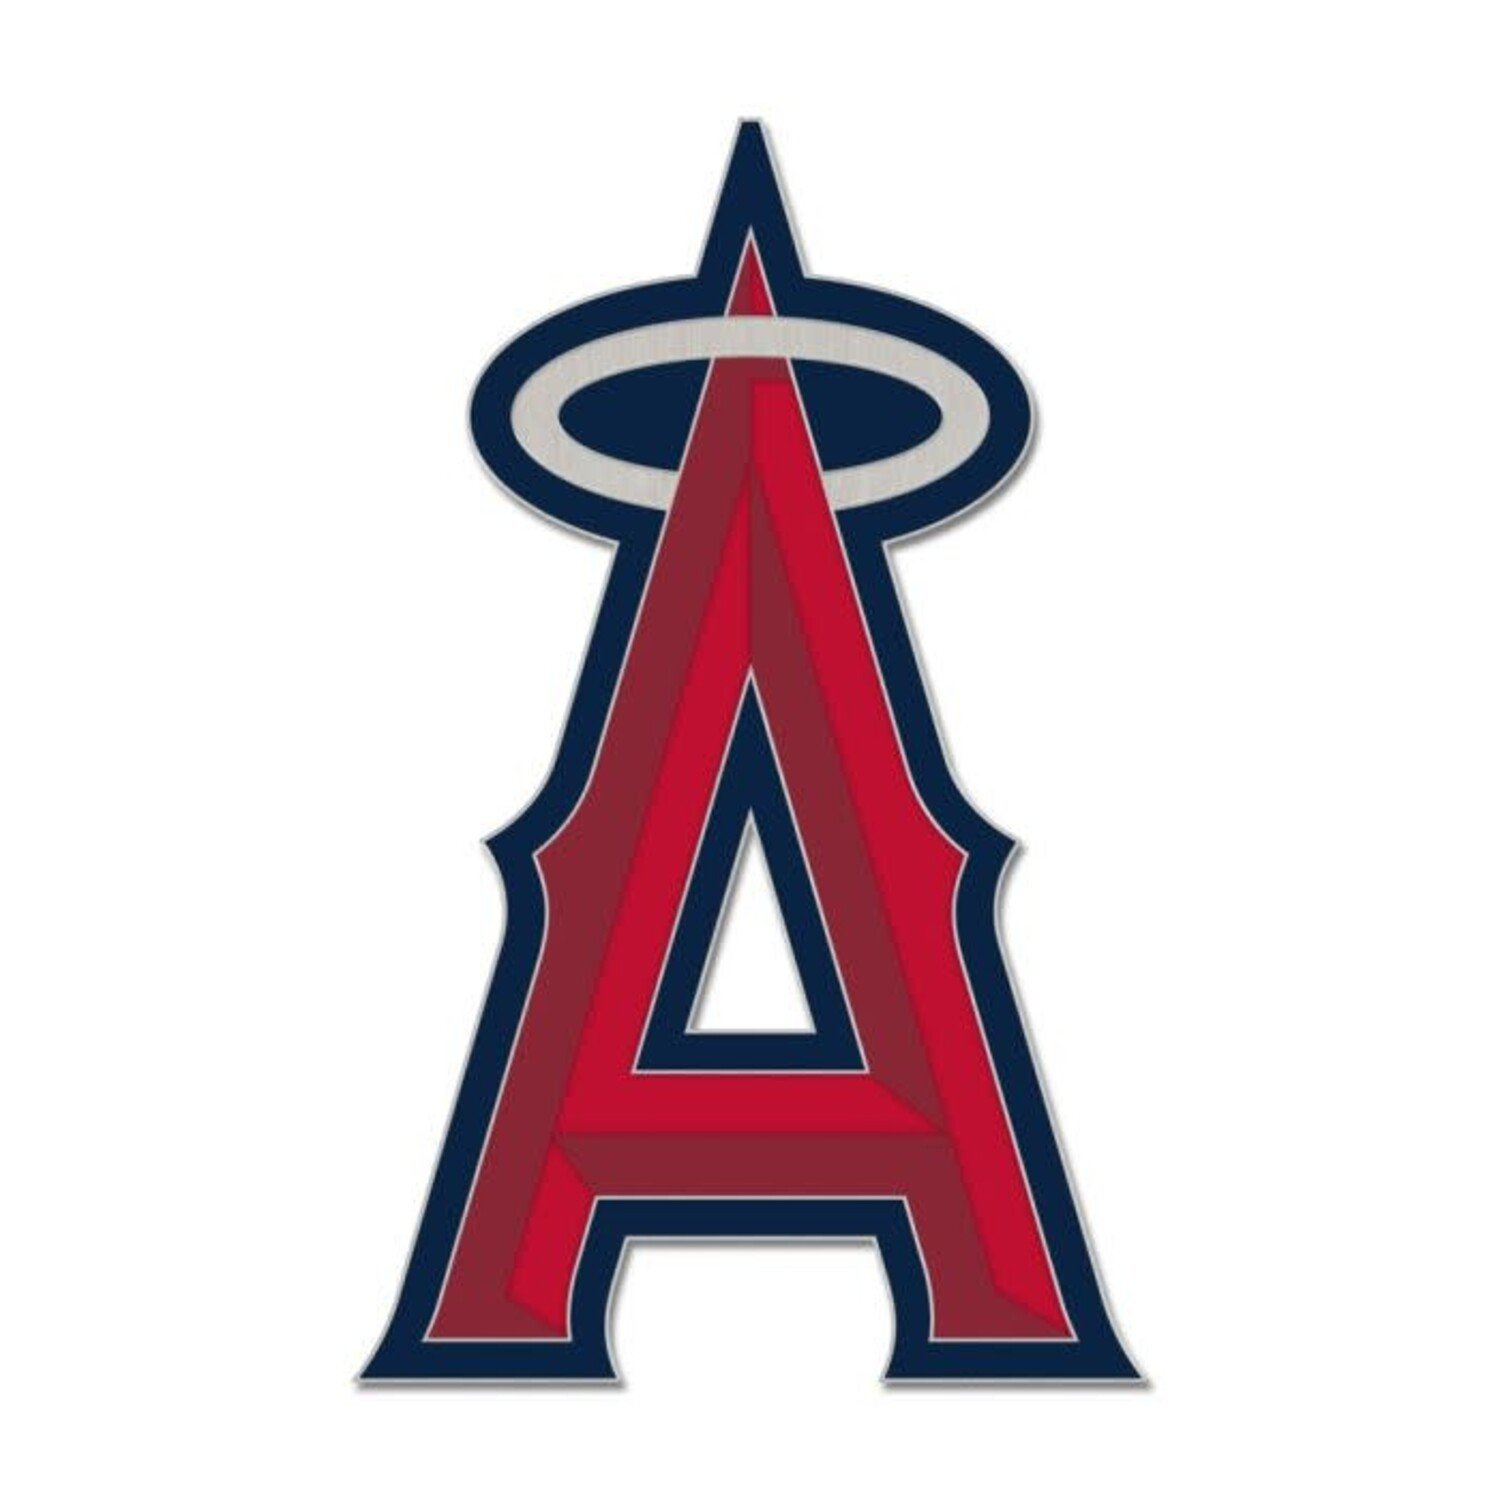 Anaheim Angels Pins